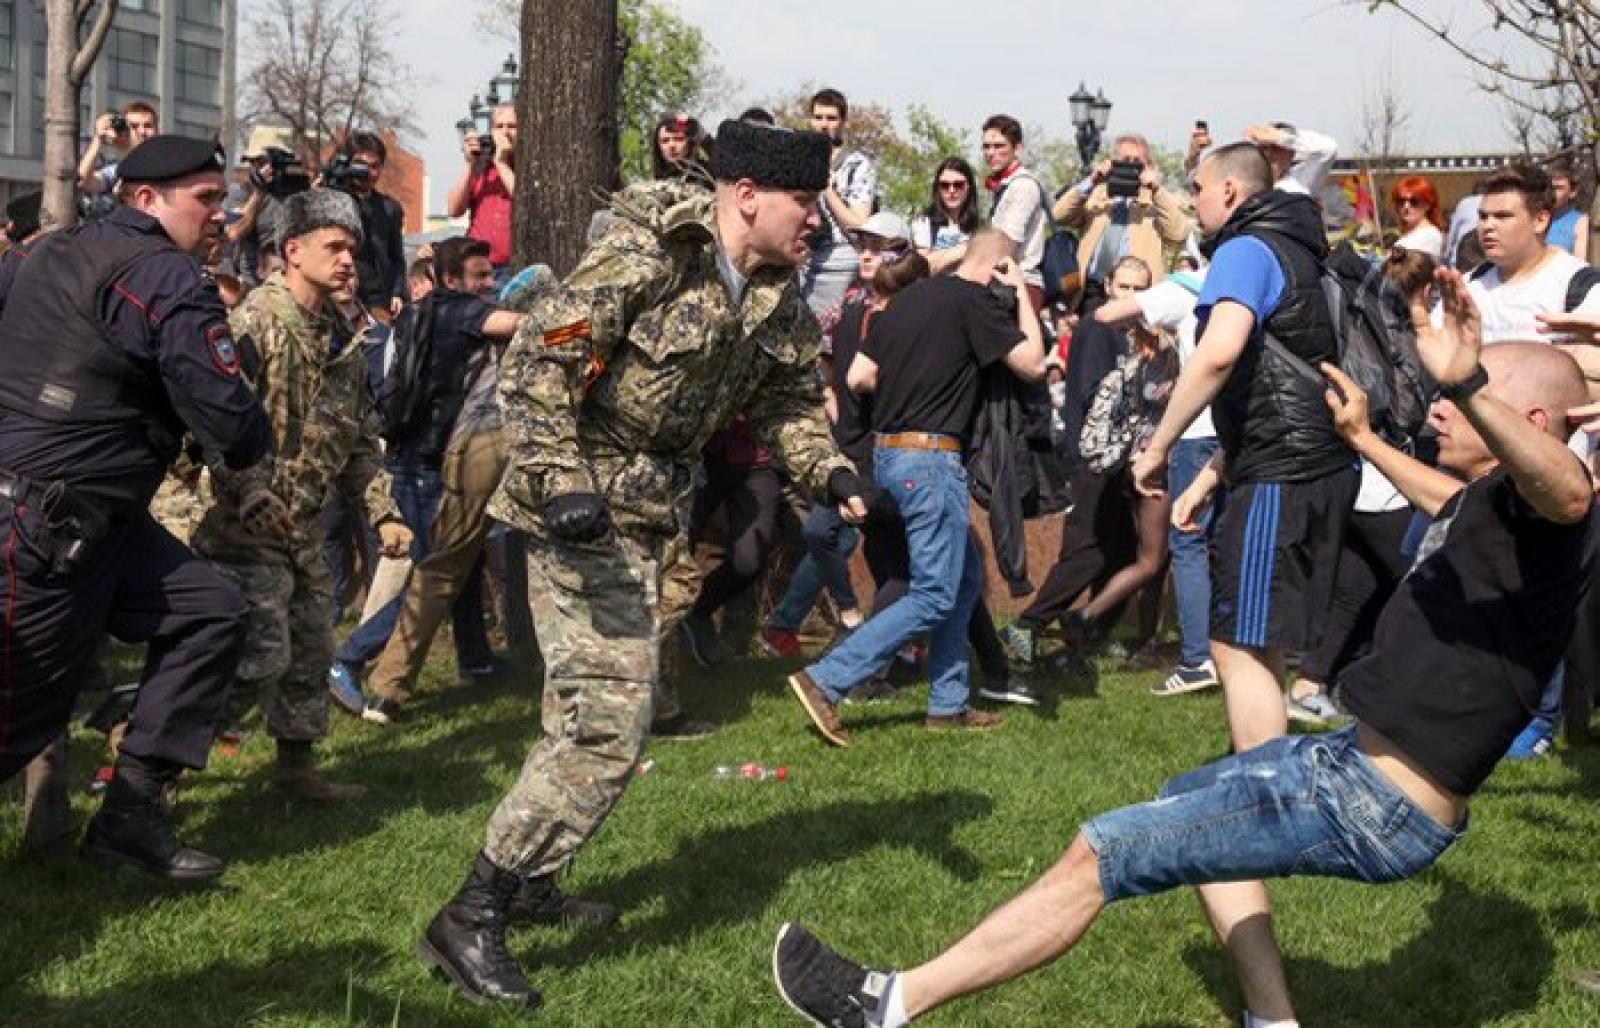 5 мая 2018 г. Казаки нагайками разгоняют митинг в Москве. Казаки избивают людей нагайками. Казаки разгоняют демонстрацию в Москве.